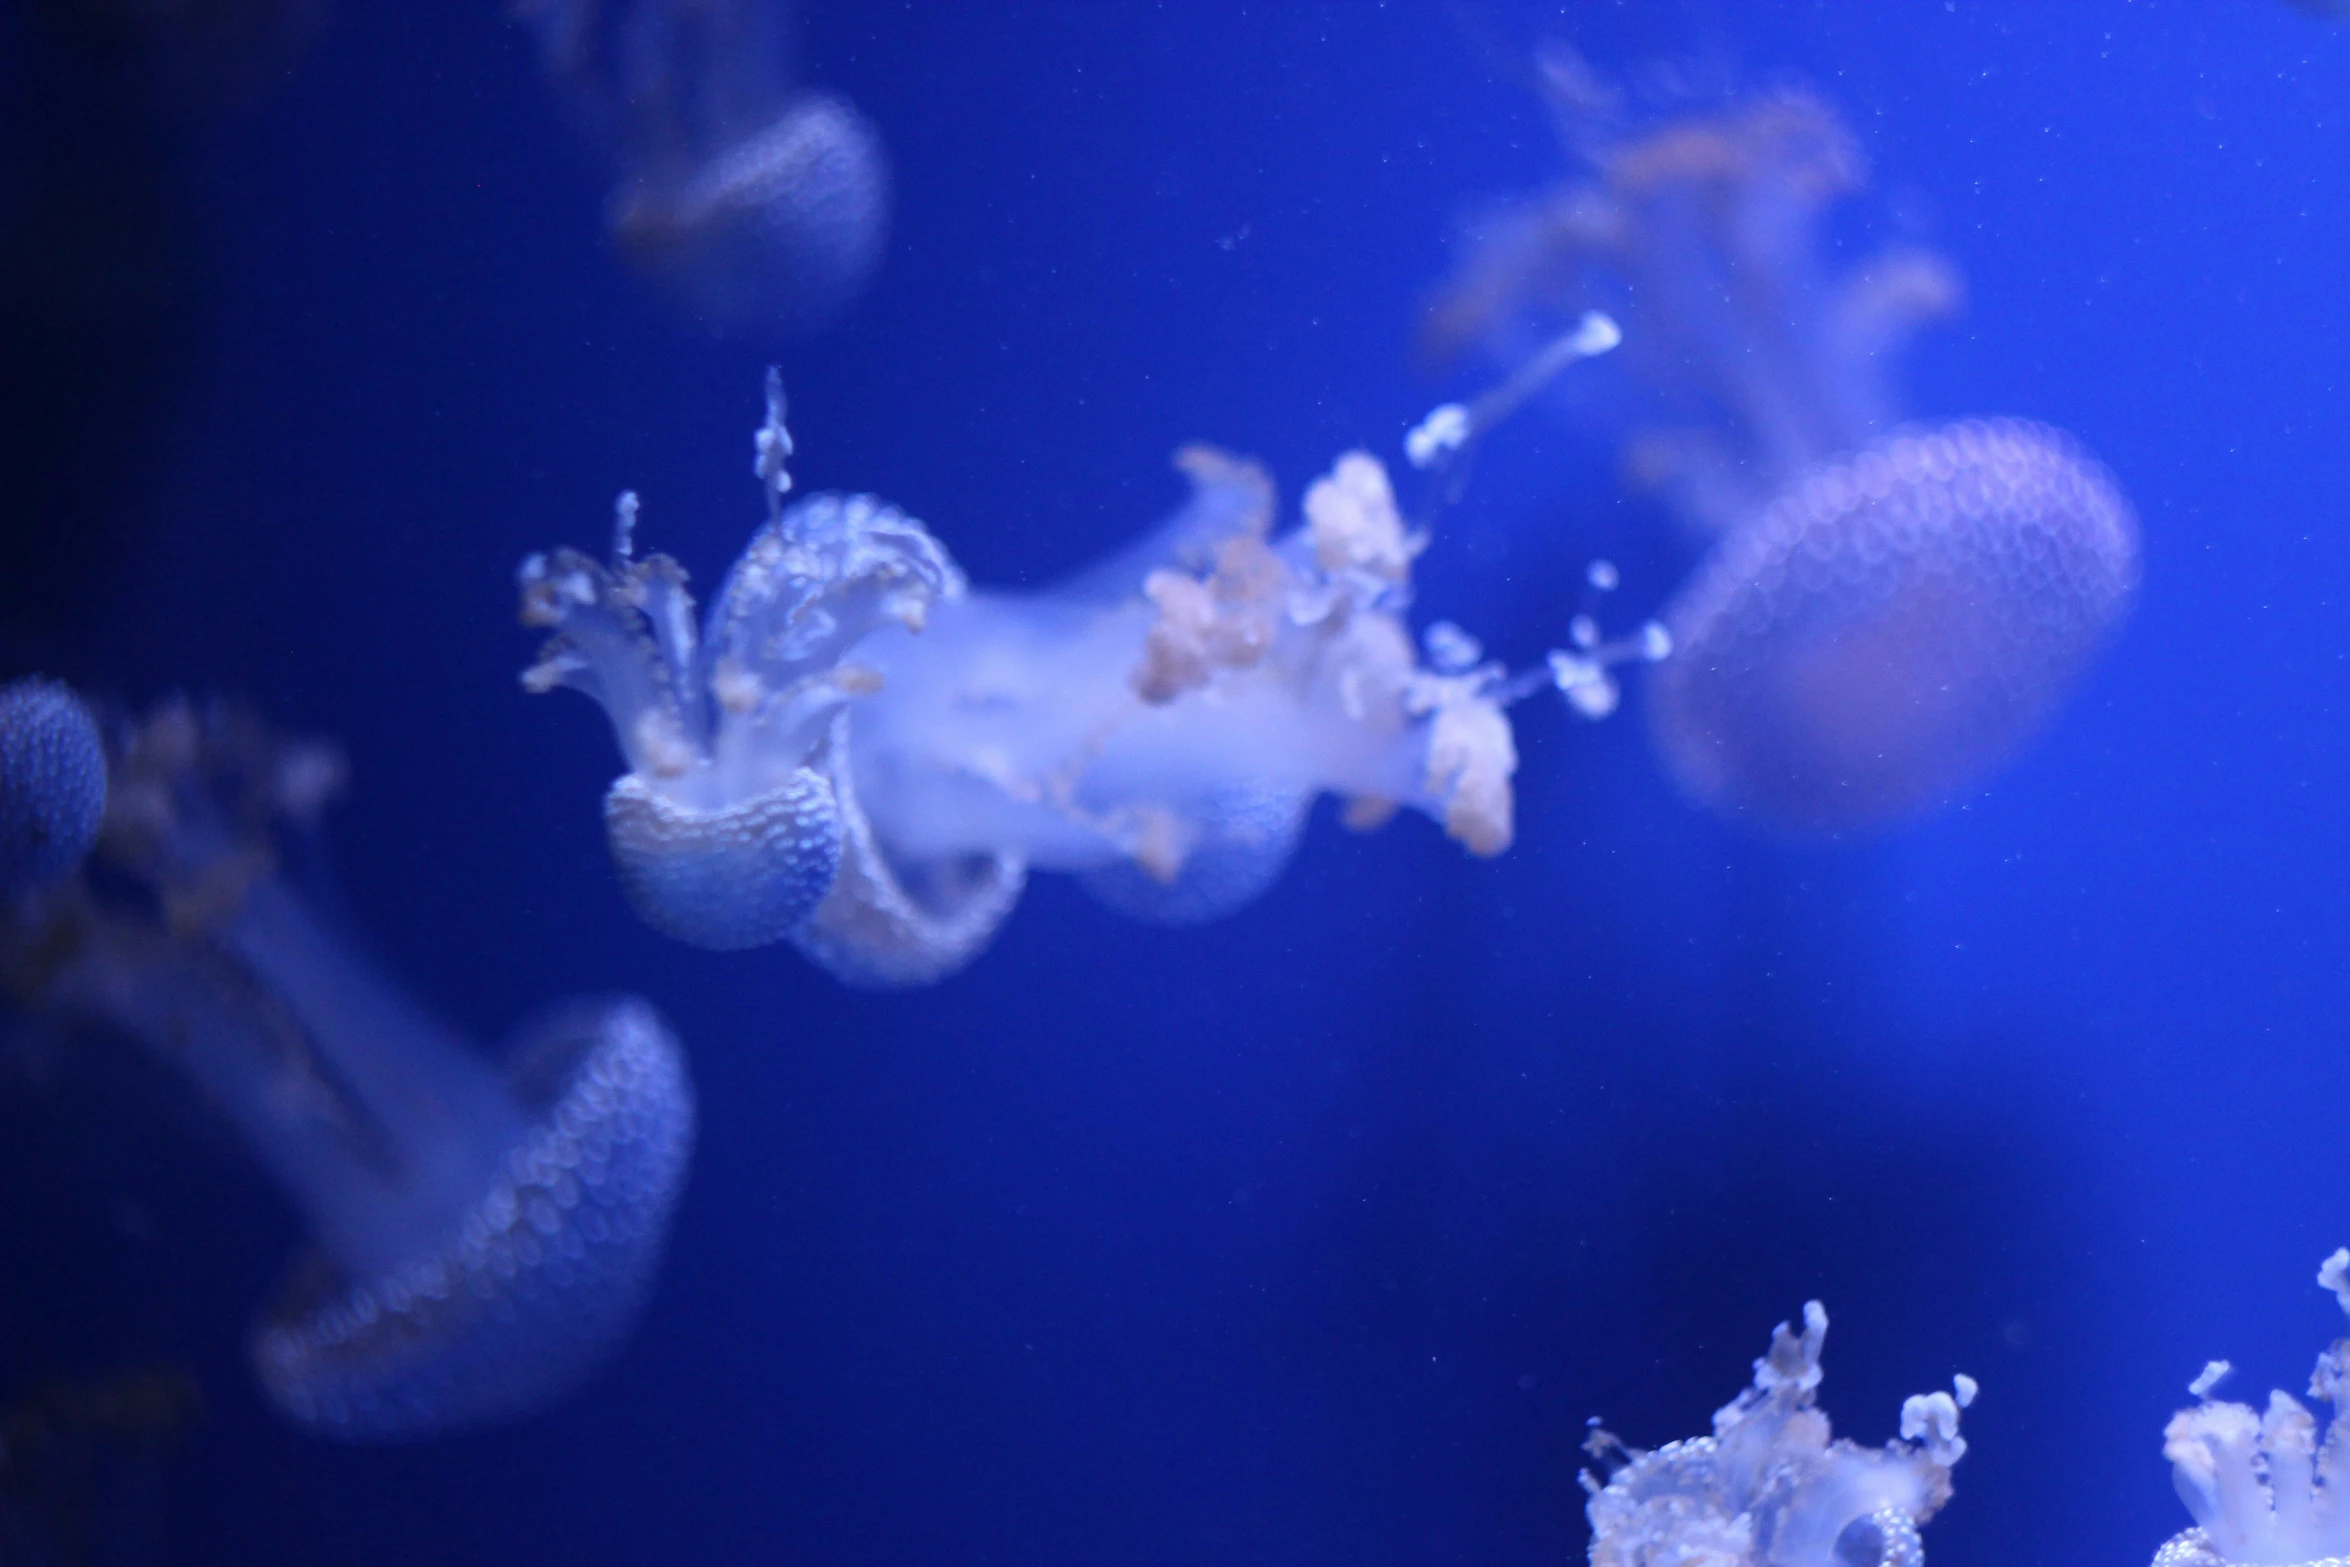 jellyfish in the blue water near an aquarium